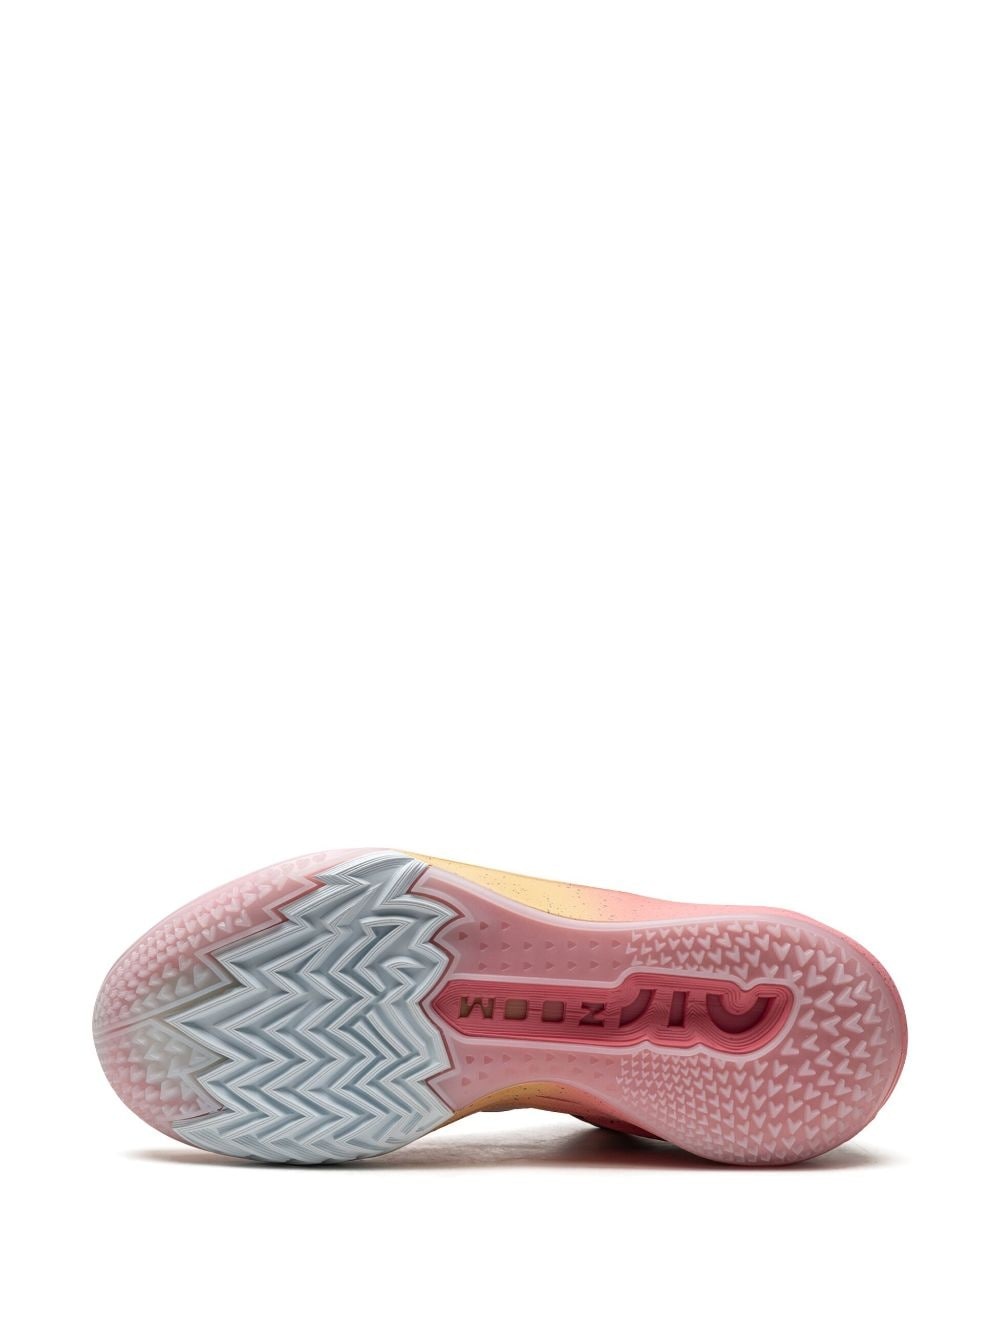 Air Zoom G.T. Cut 2 "Pearl Pink" sneakers - 4